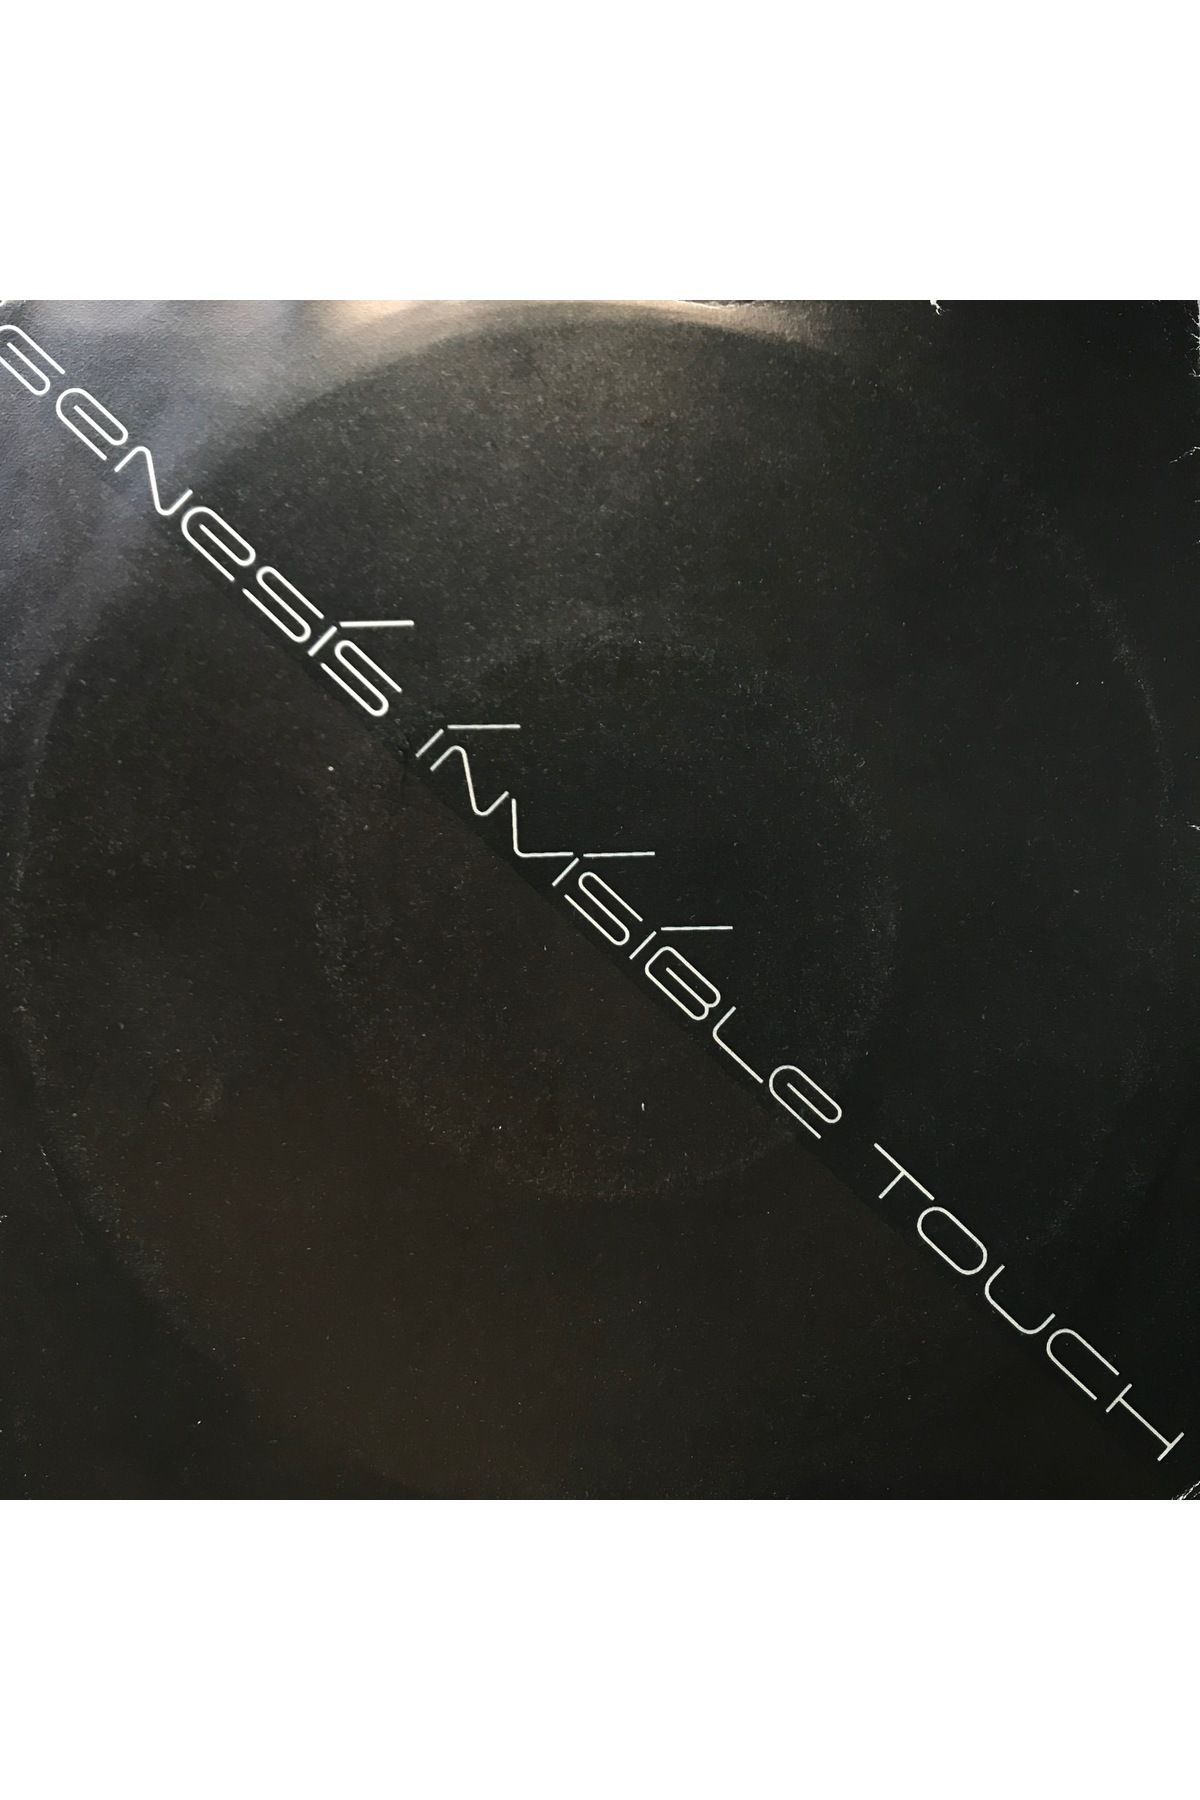 mazi plak Genesis  - Invisible Touch 45'lik Plak